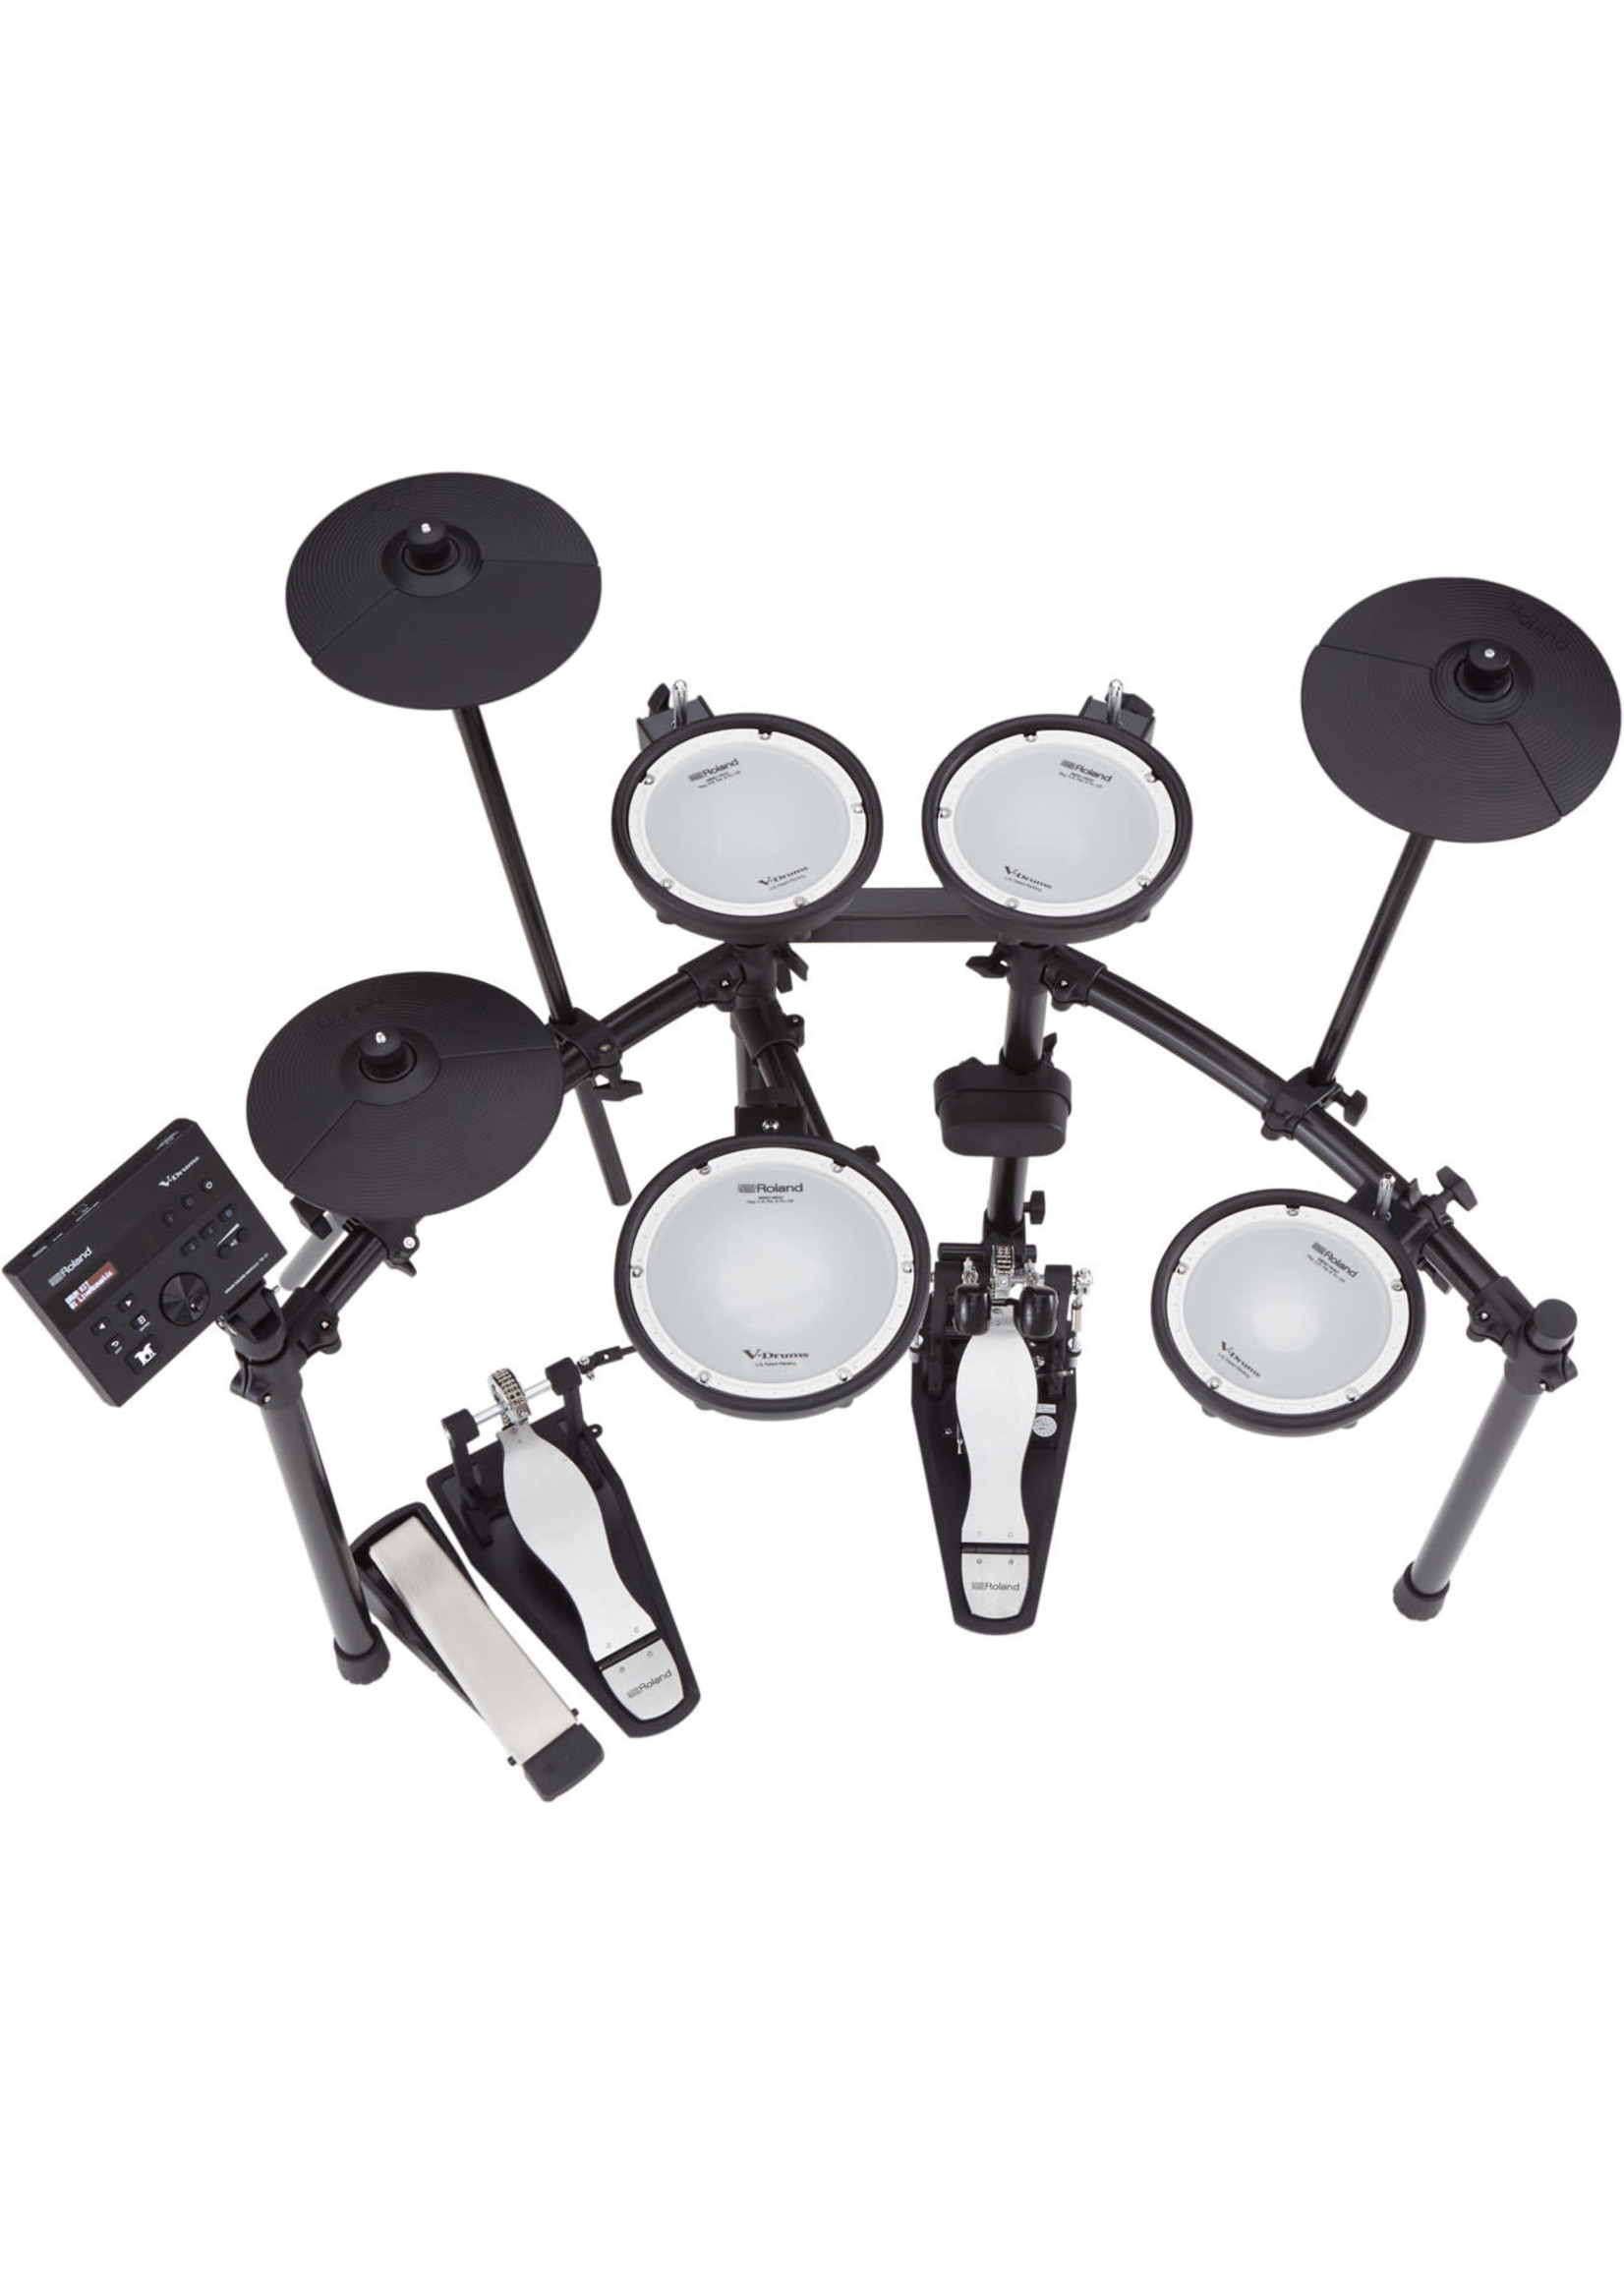 Roland Roland TD-07DMK V-Drums Electronic Drum Kit